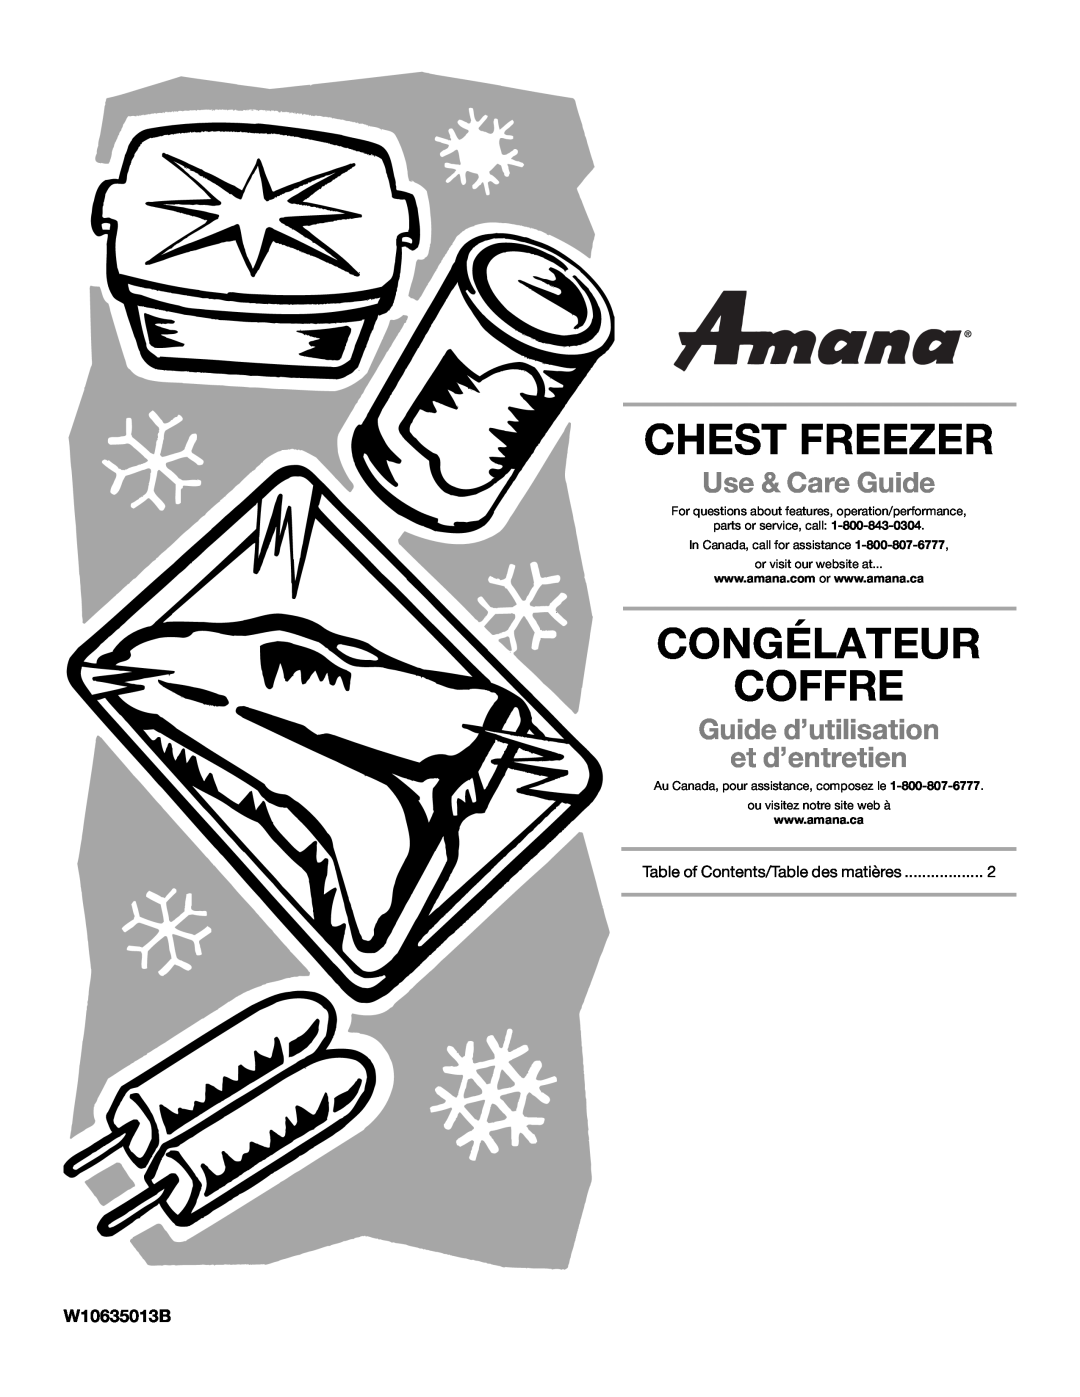 Amana amana manual W10635013B, Chest Freezer, Congélateur Coffre, Use & Care Guide, Guide d’utilisation et d’entretien 